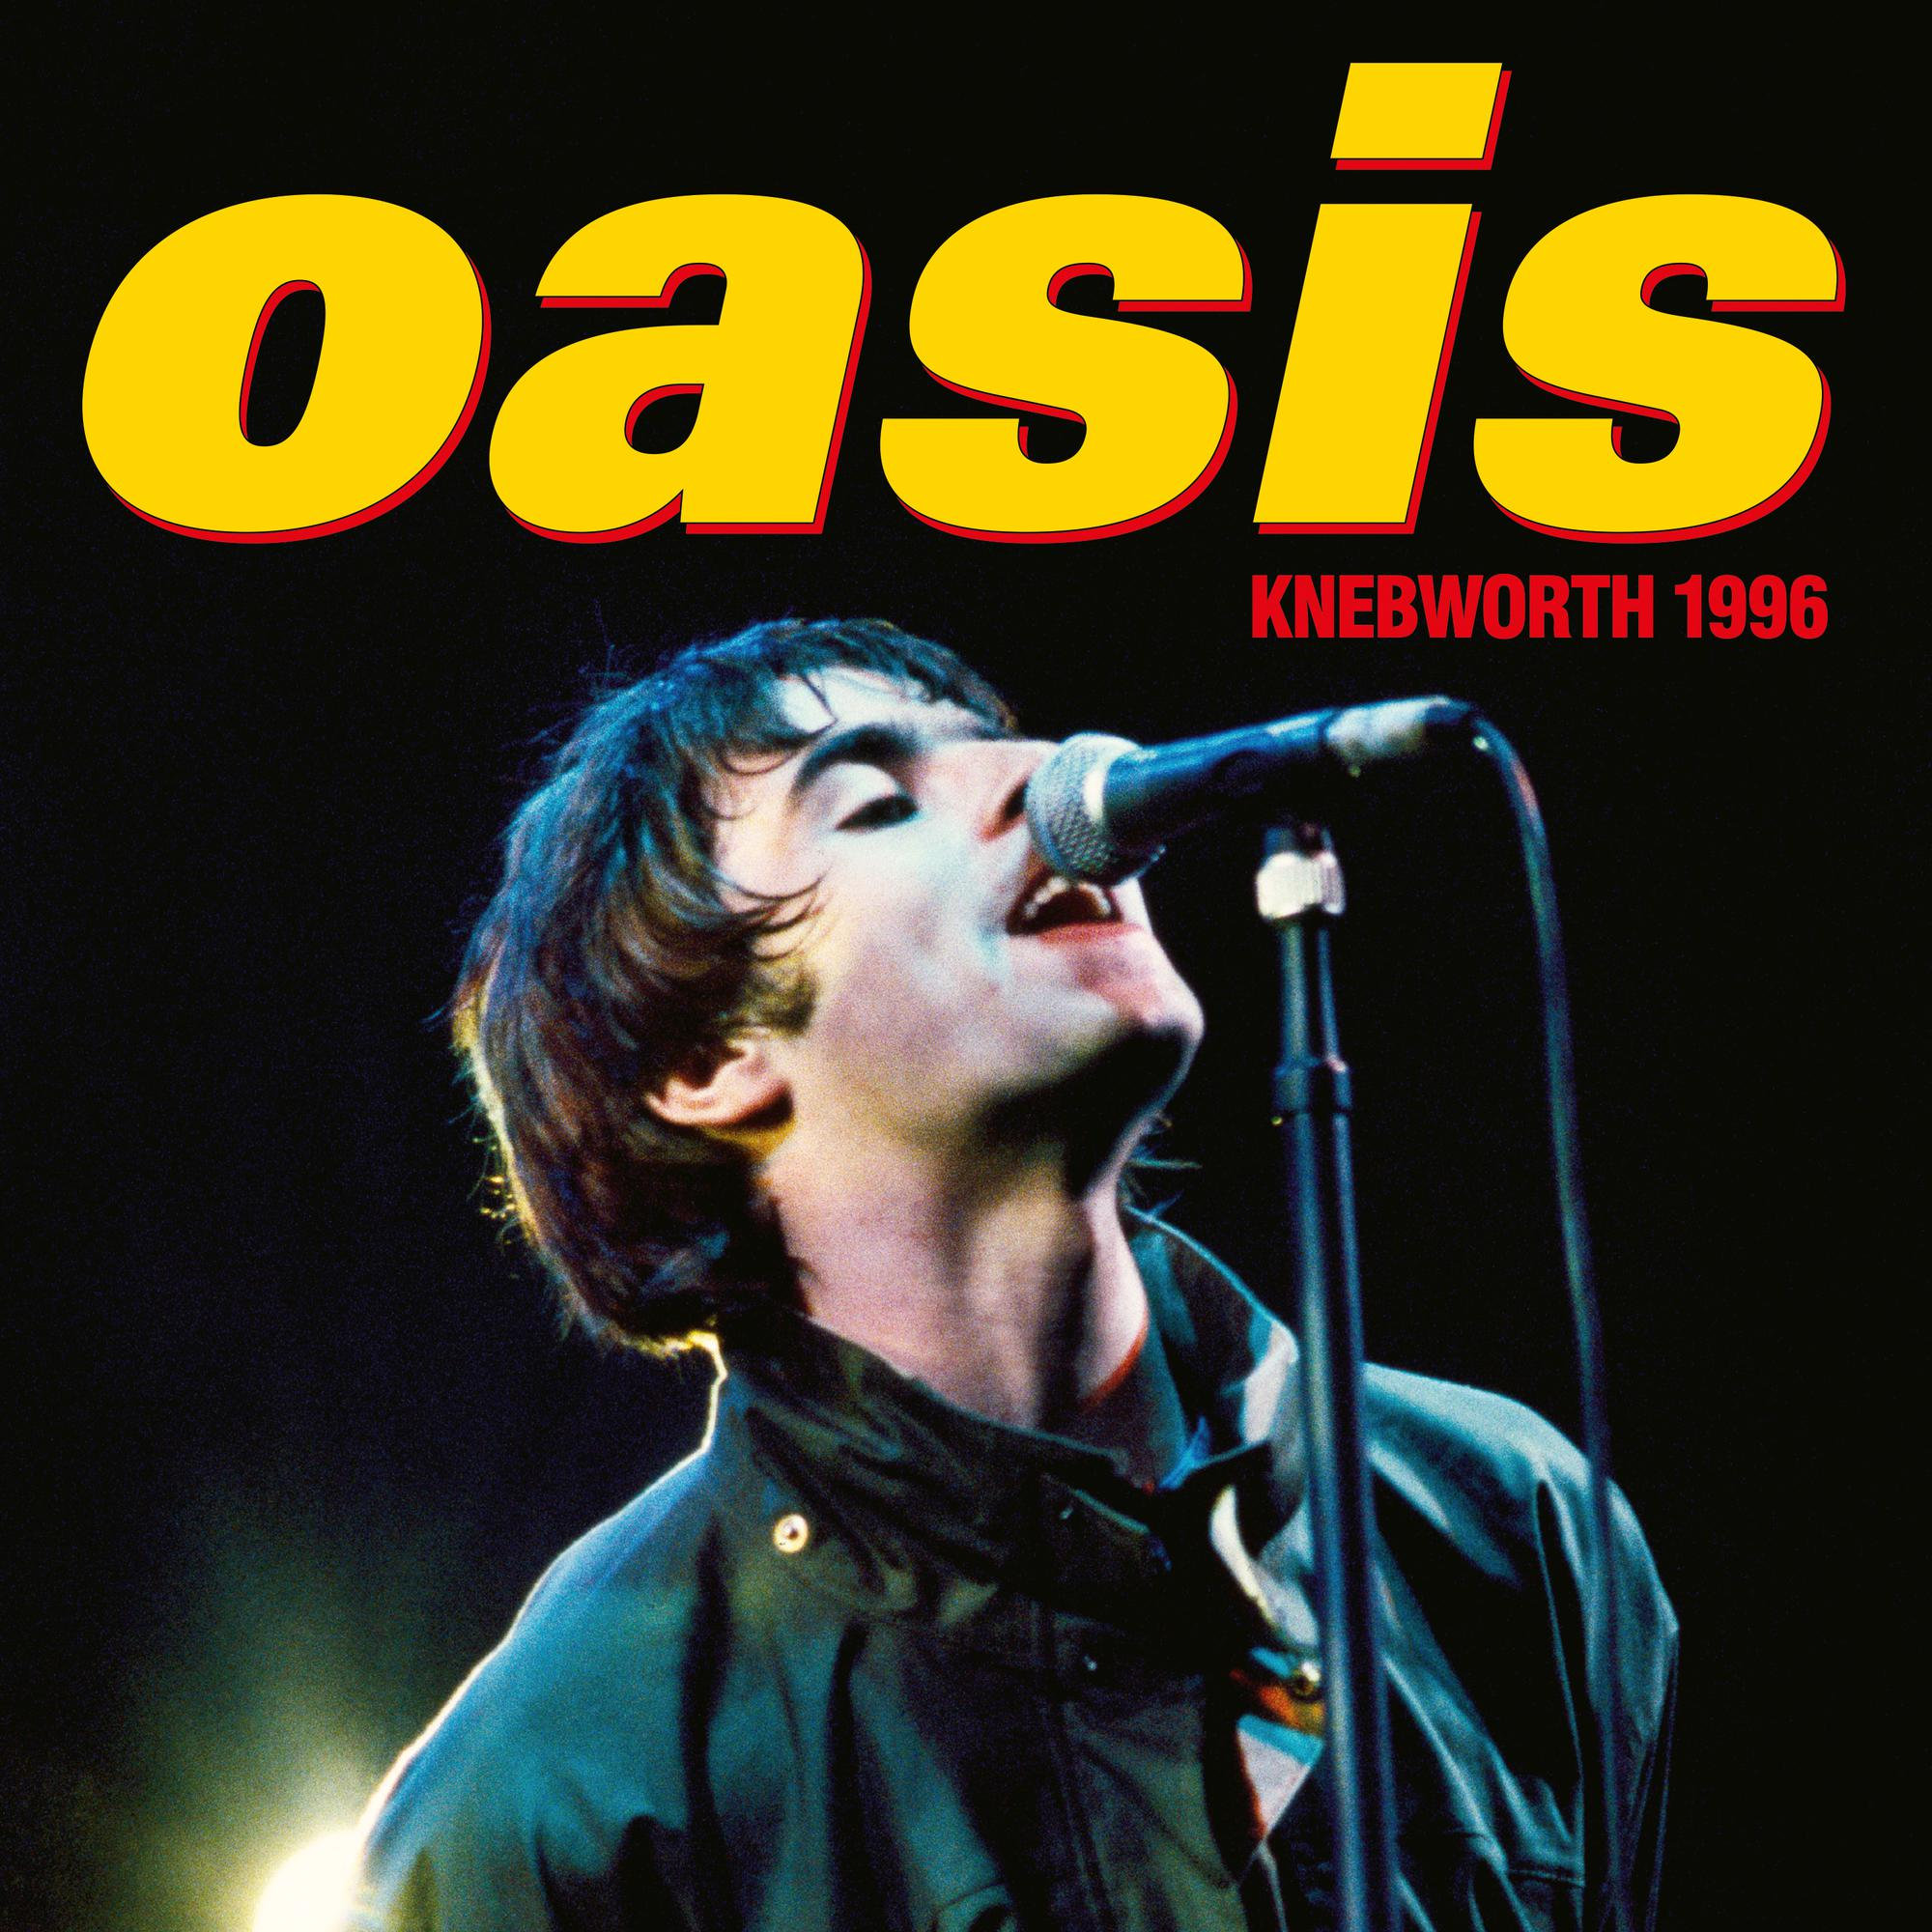 Audio Cd Oasis - Knebworth 1996 2 Cd+Dvd NUOVO SIGILLATO EDIZIONE DEL SUBITO DISPONIBILE